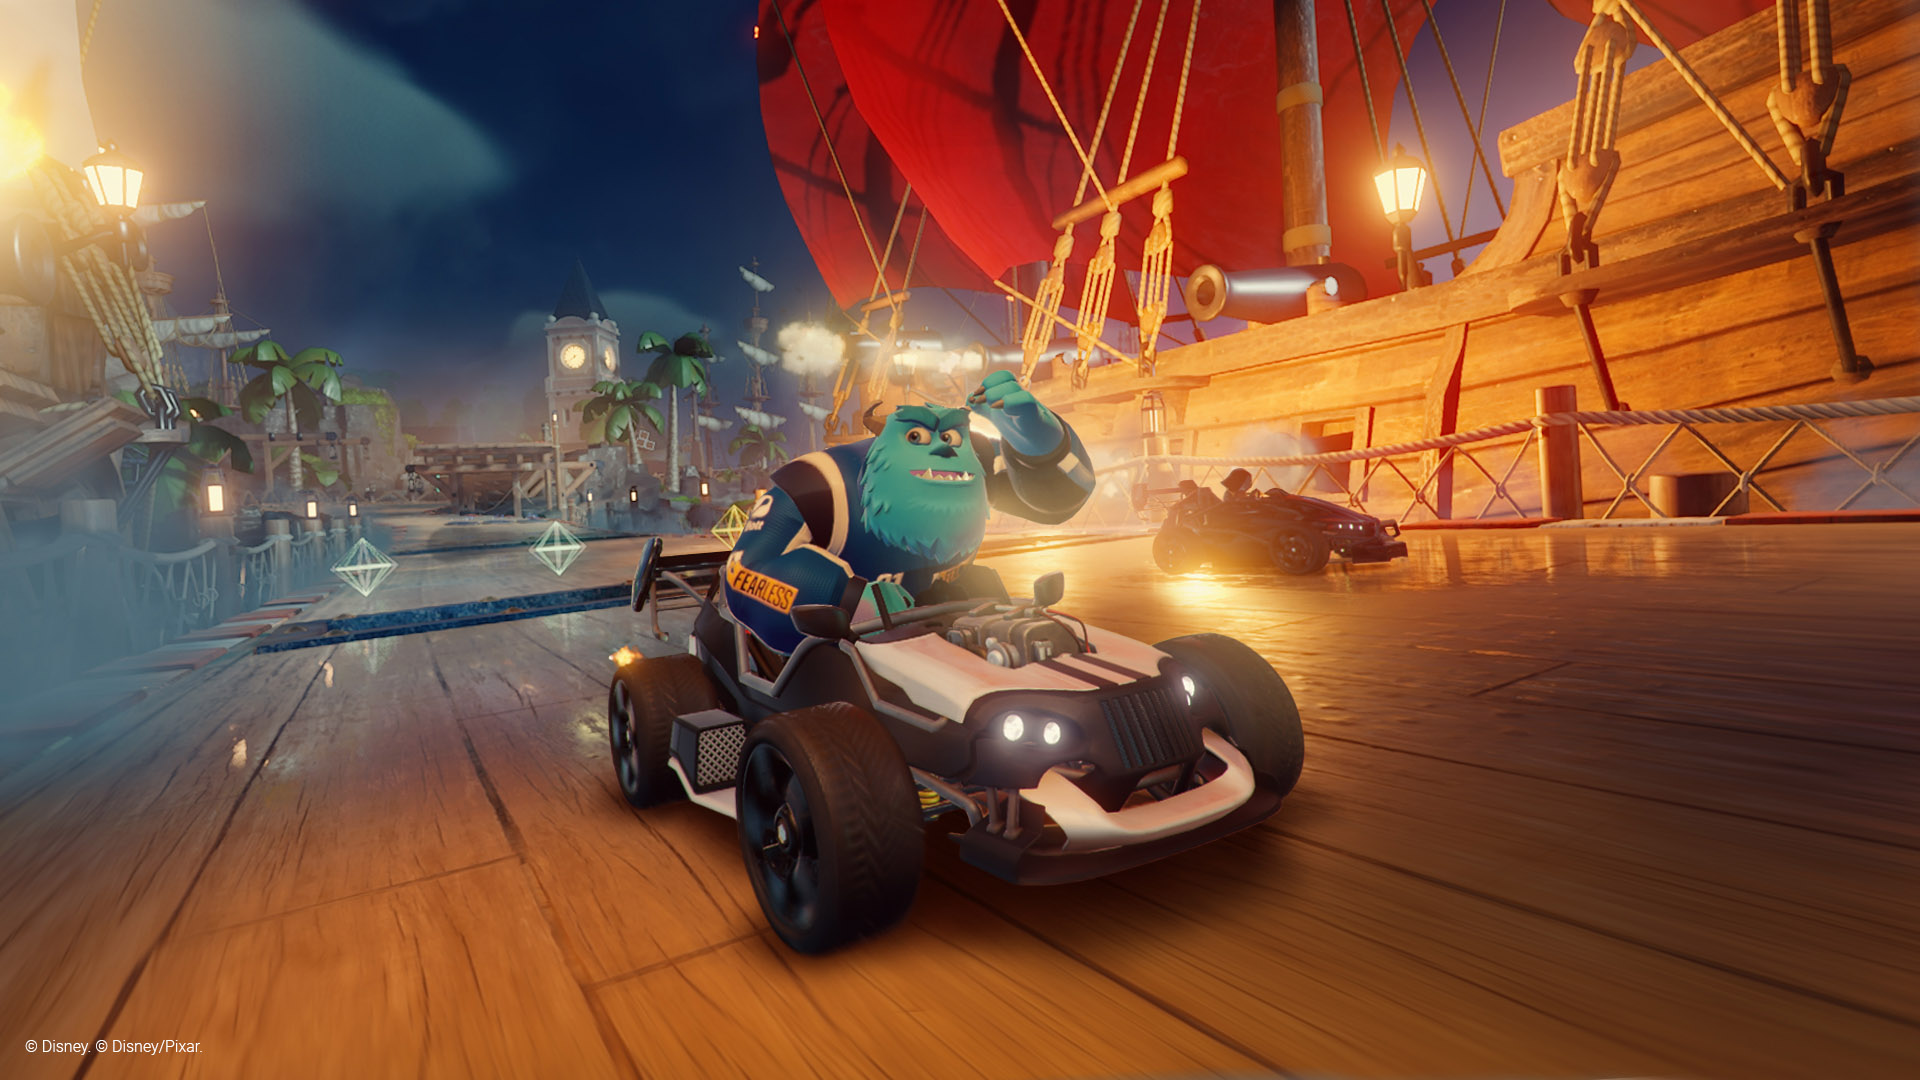 Disney Speedstorm: game de corrida gratuito é confirmado para